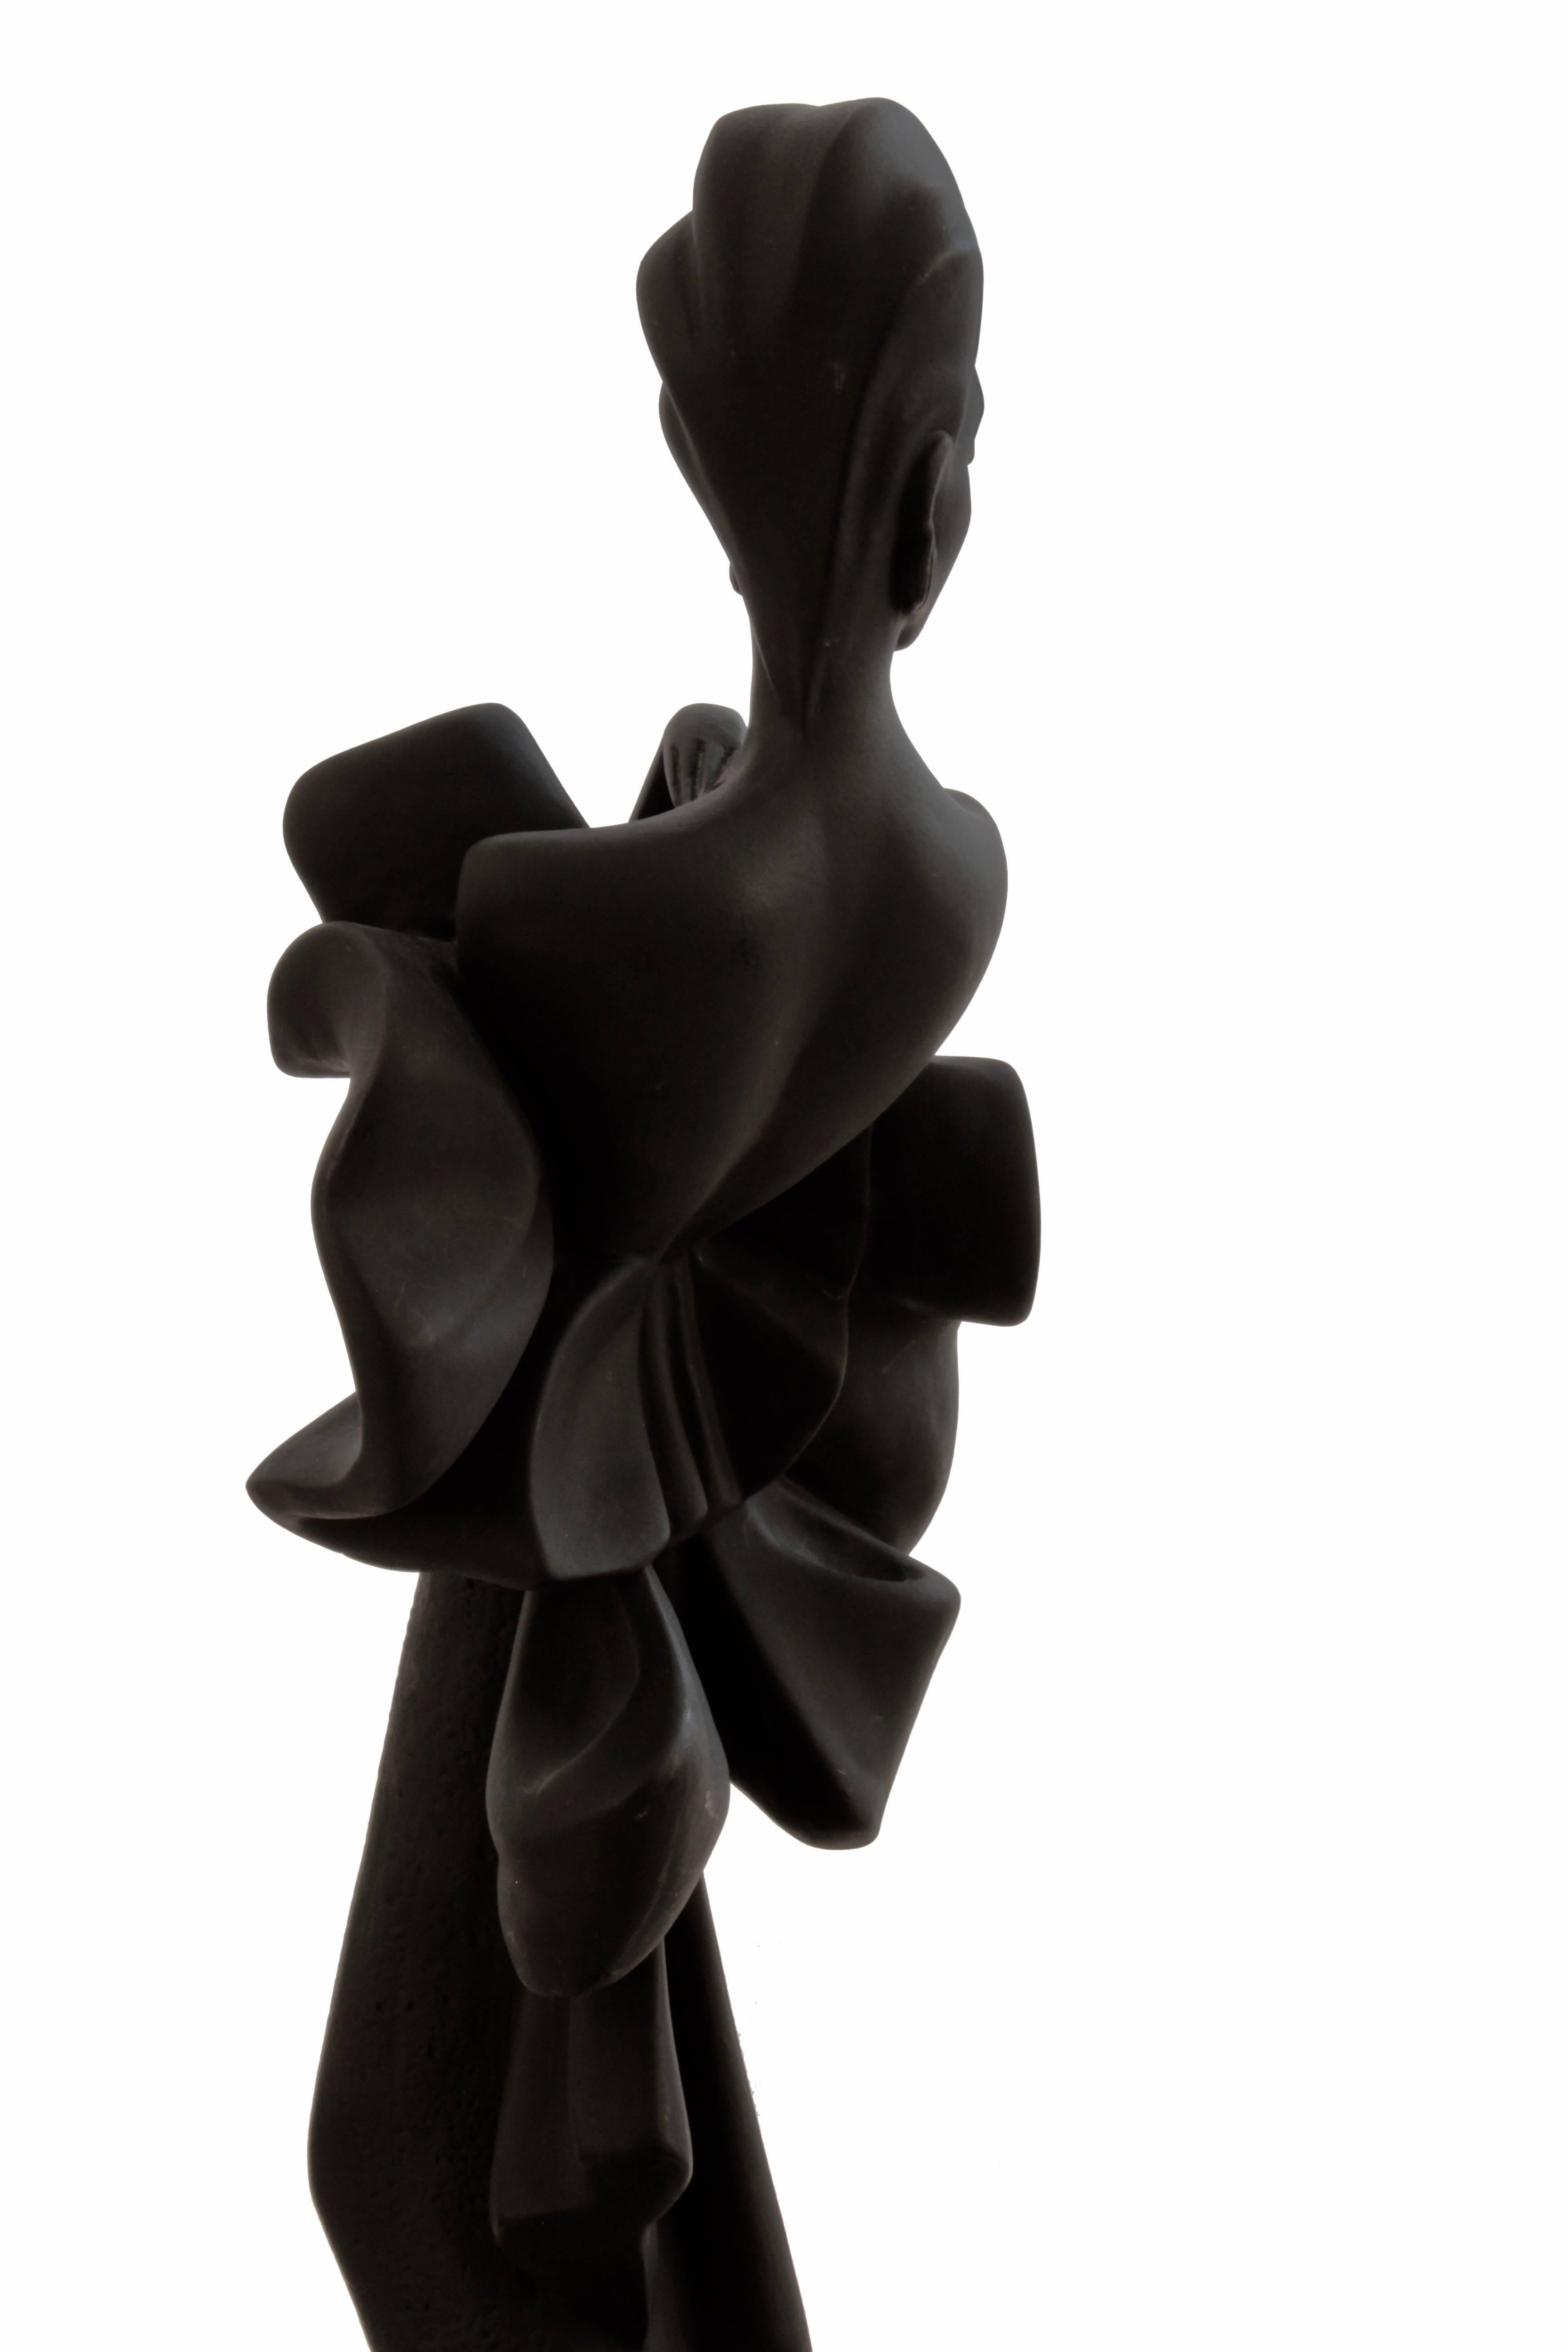 Alexsander Danel Austin Productions Inc Orchide Sculpture AP3590 Fashionista 90s For Sale 3